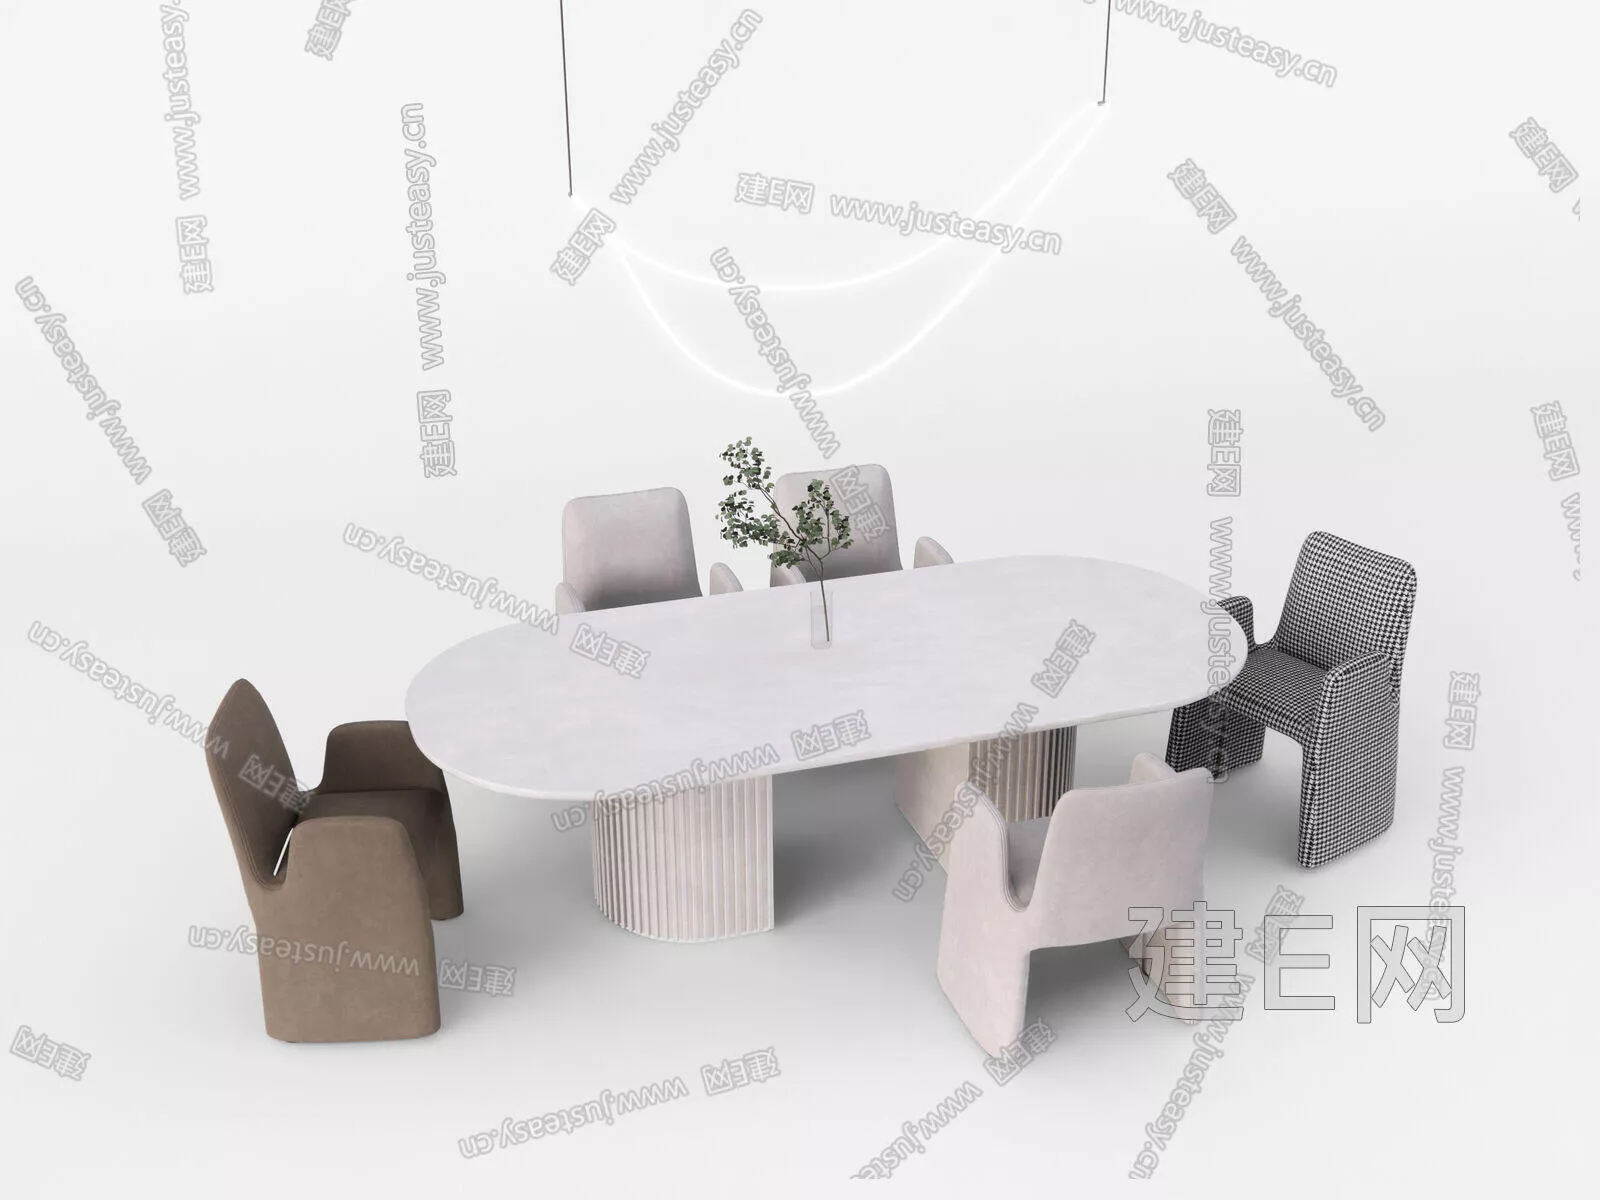 MODERN DINING TABLE SET - SKETCHUP 3D MODEL - ENSCAPE - 114968027